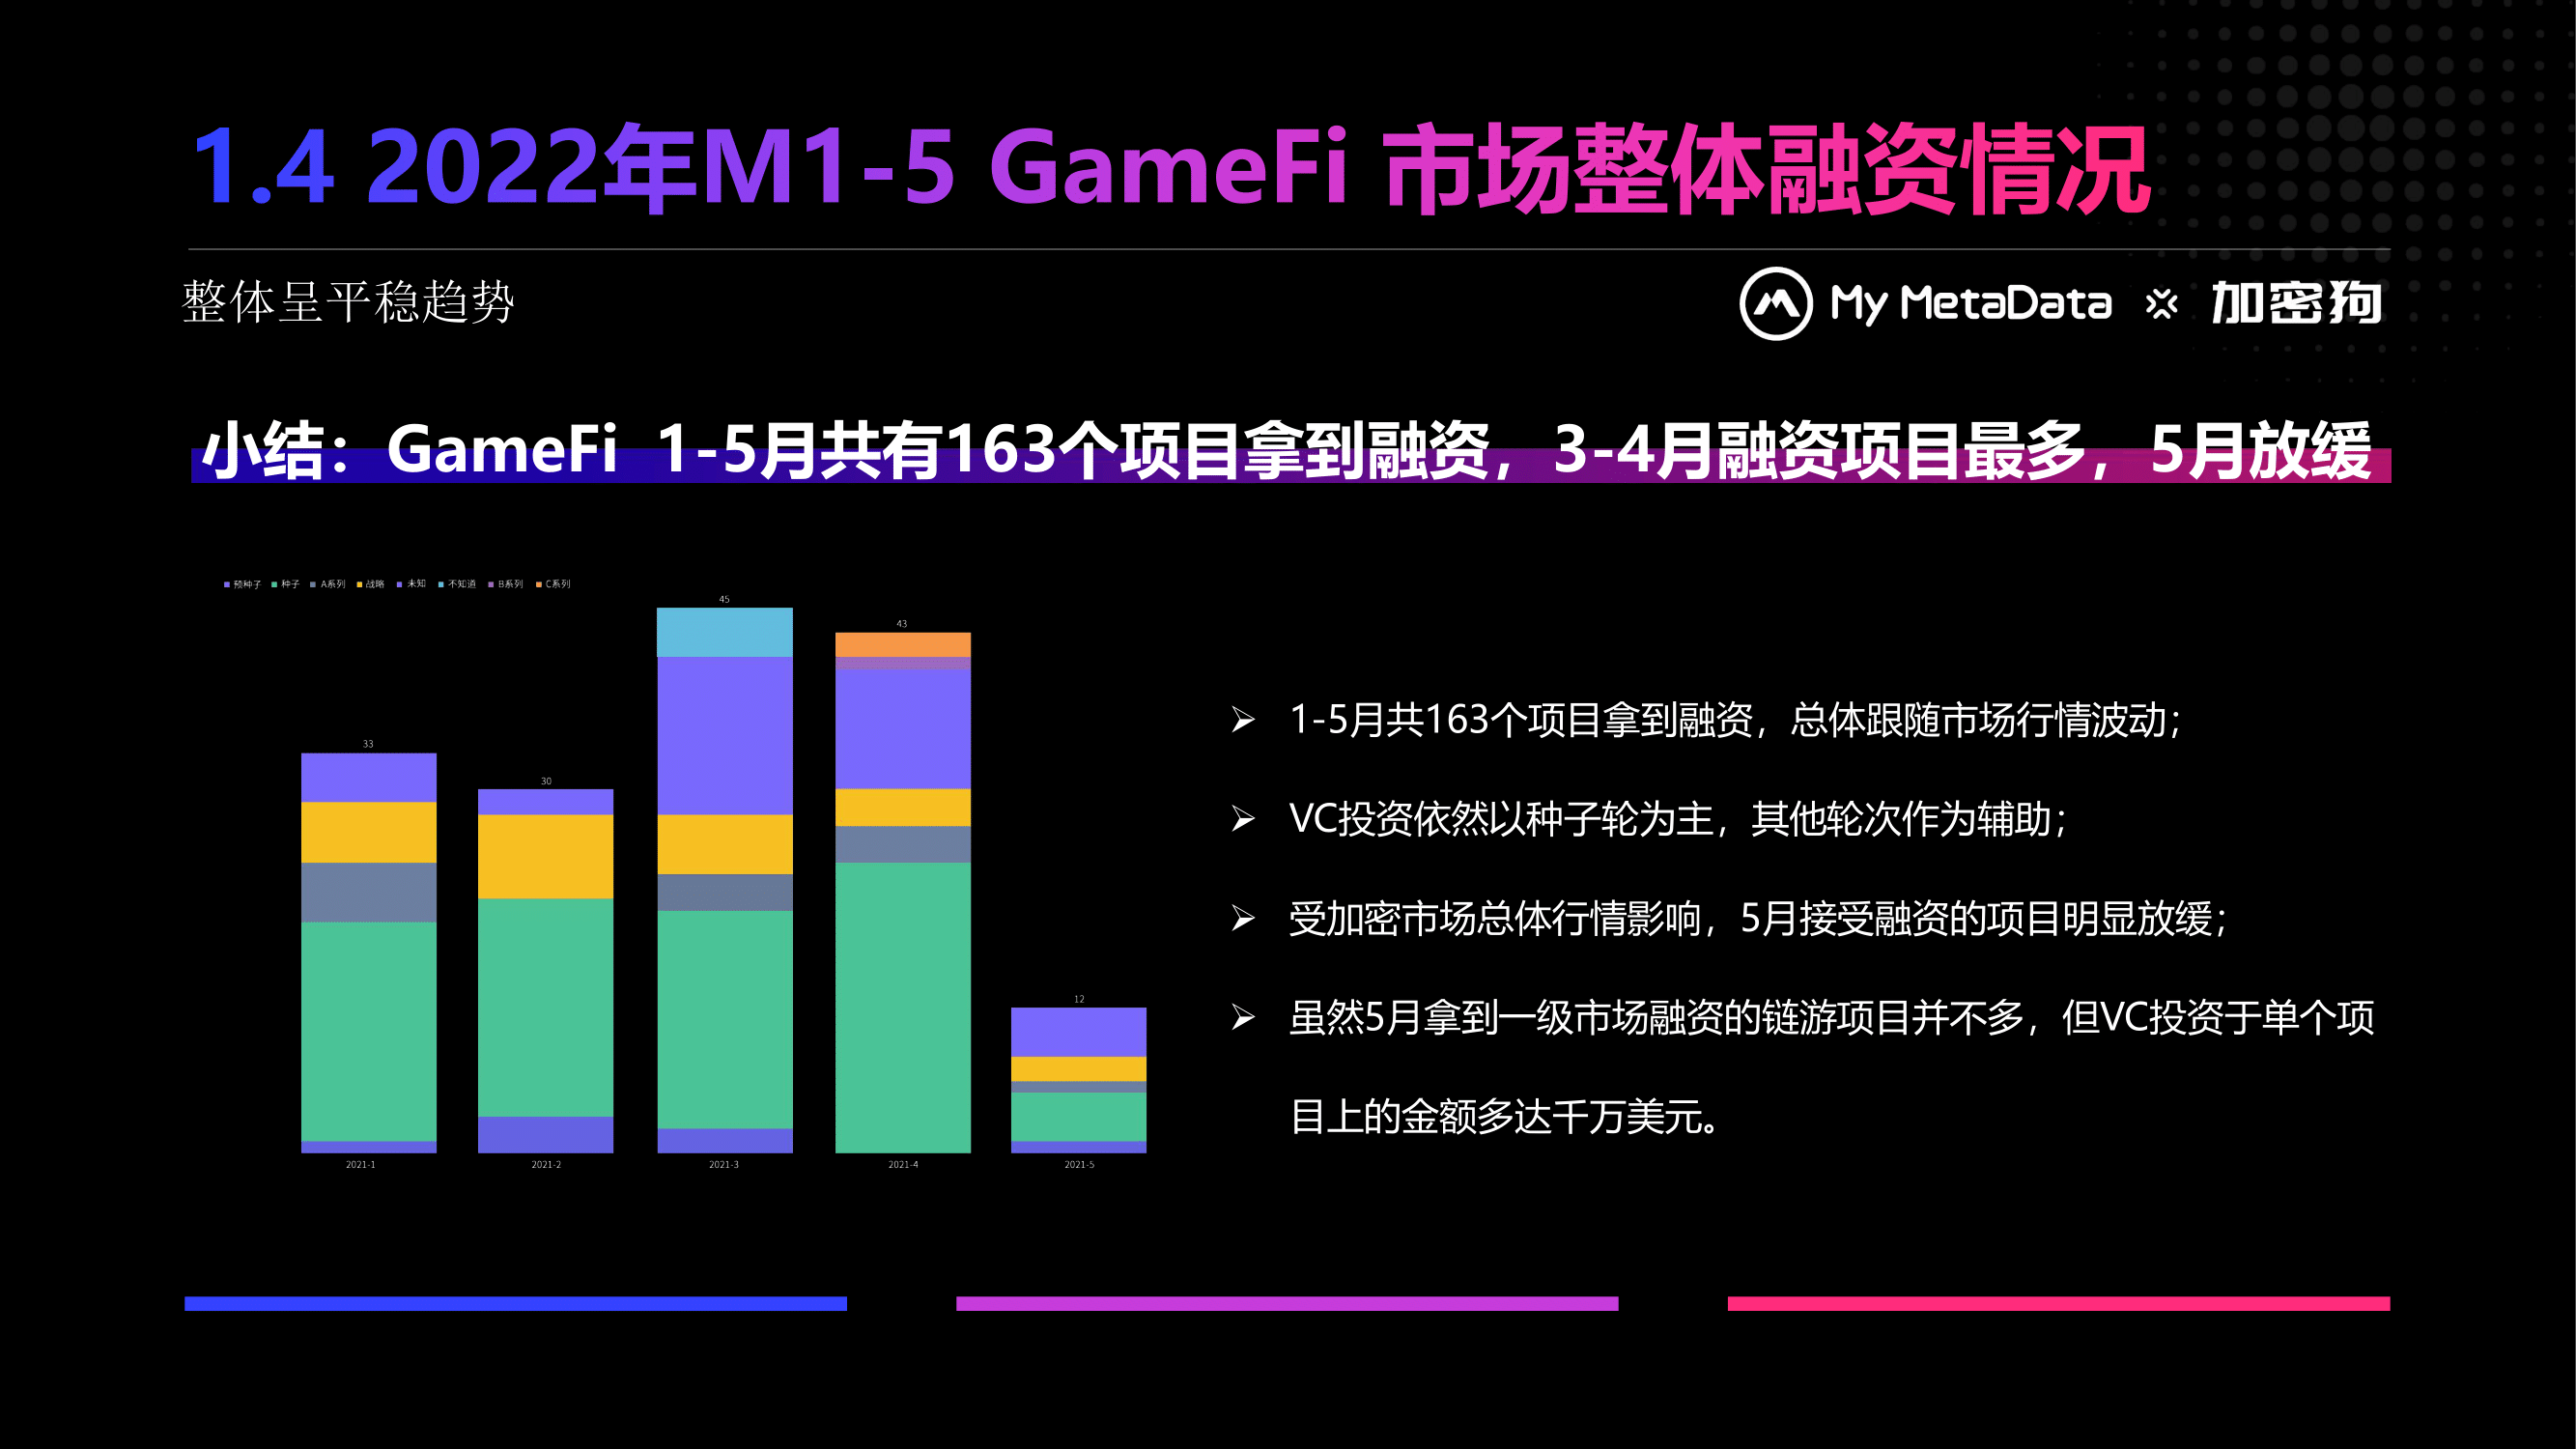 報告：今年 1-5 月 GameFi 融資報告及鏈遊前景分析